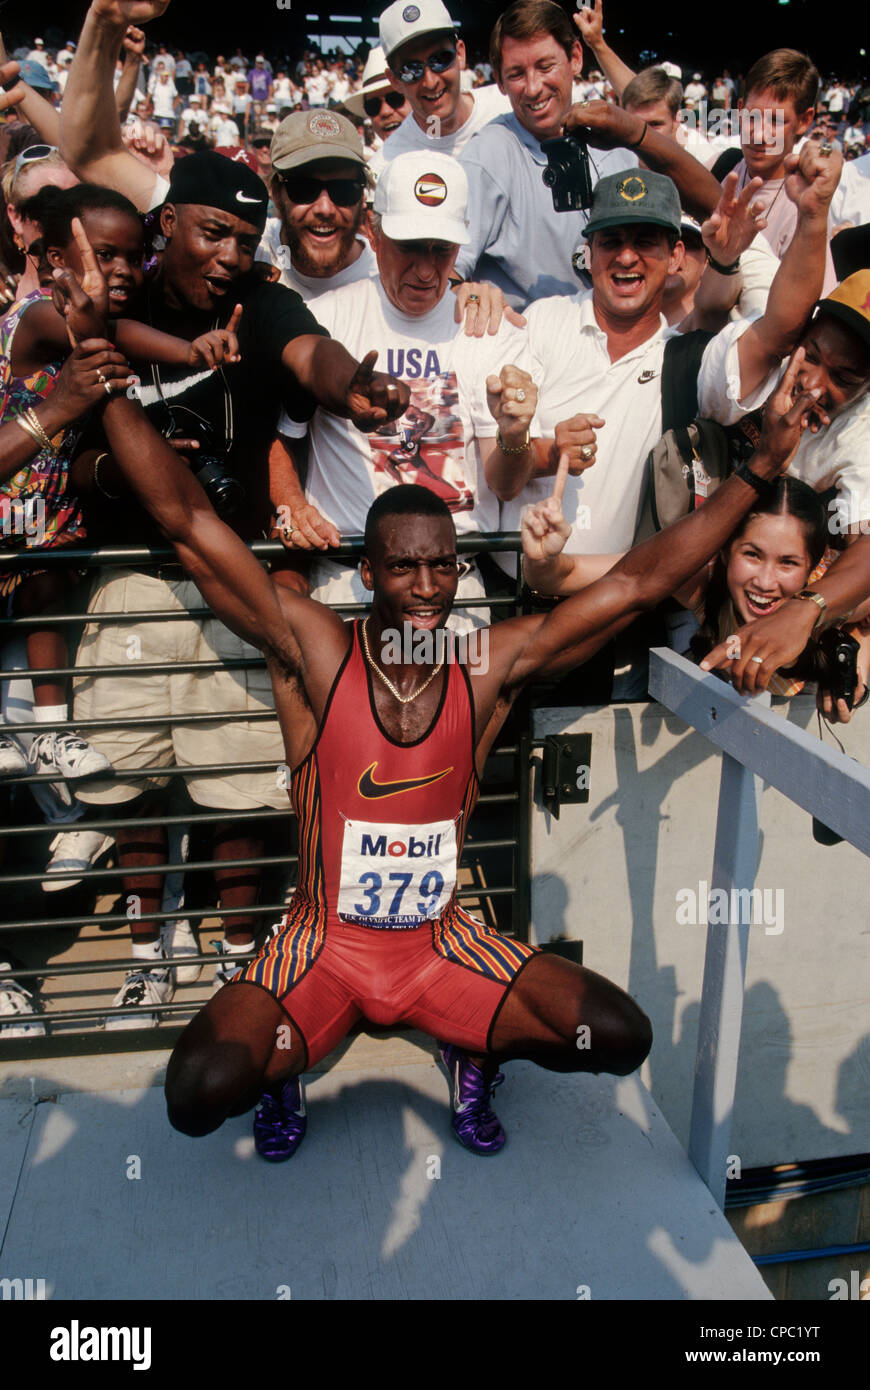 Michael Johnson après avoir remporté le 200 mètres dans un record du monde de 19,66 à l'US 1996 Piste Olympique et les essais au champ. Banque D'Images